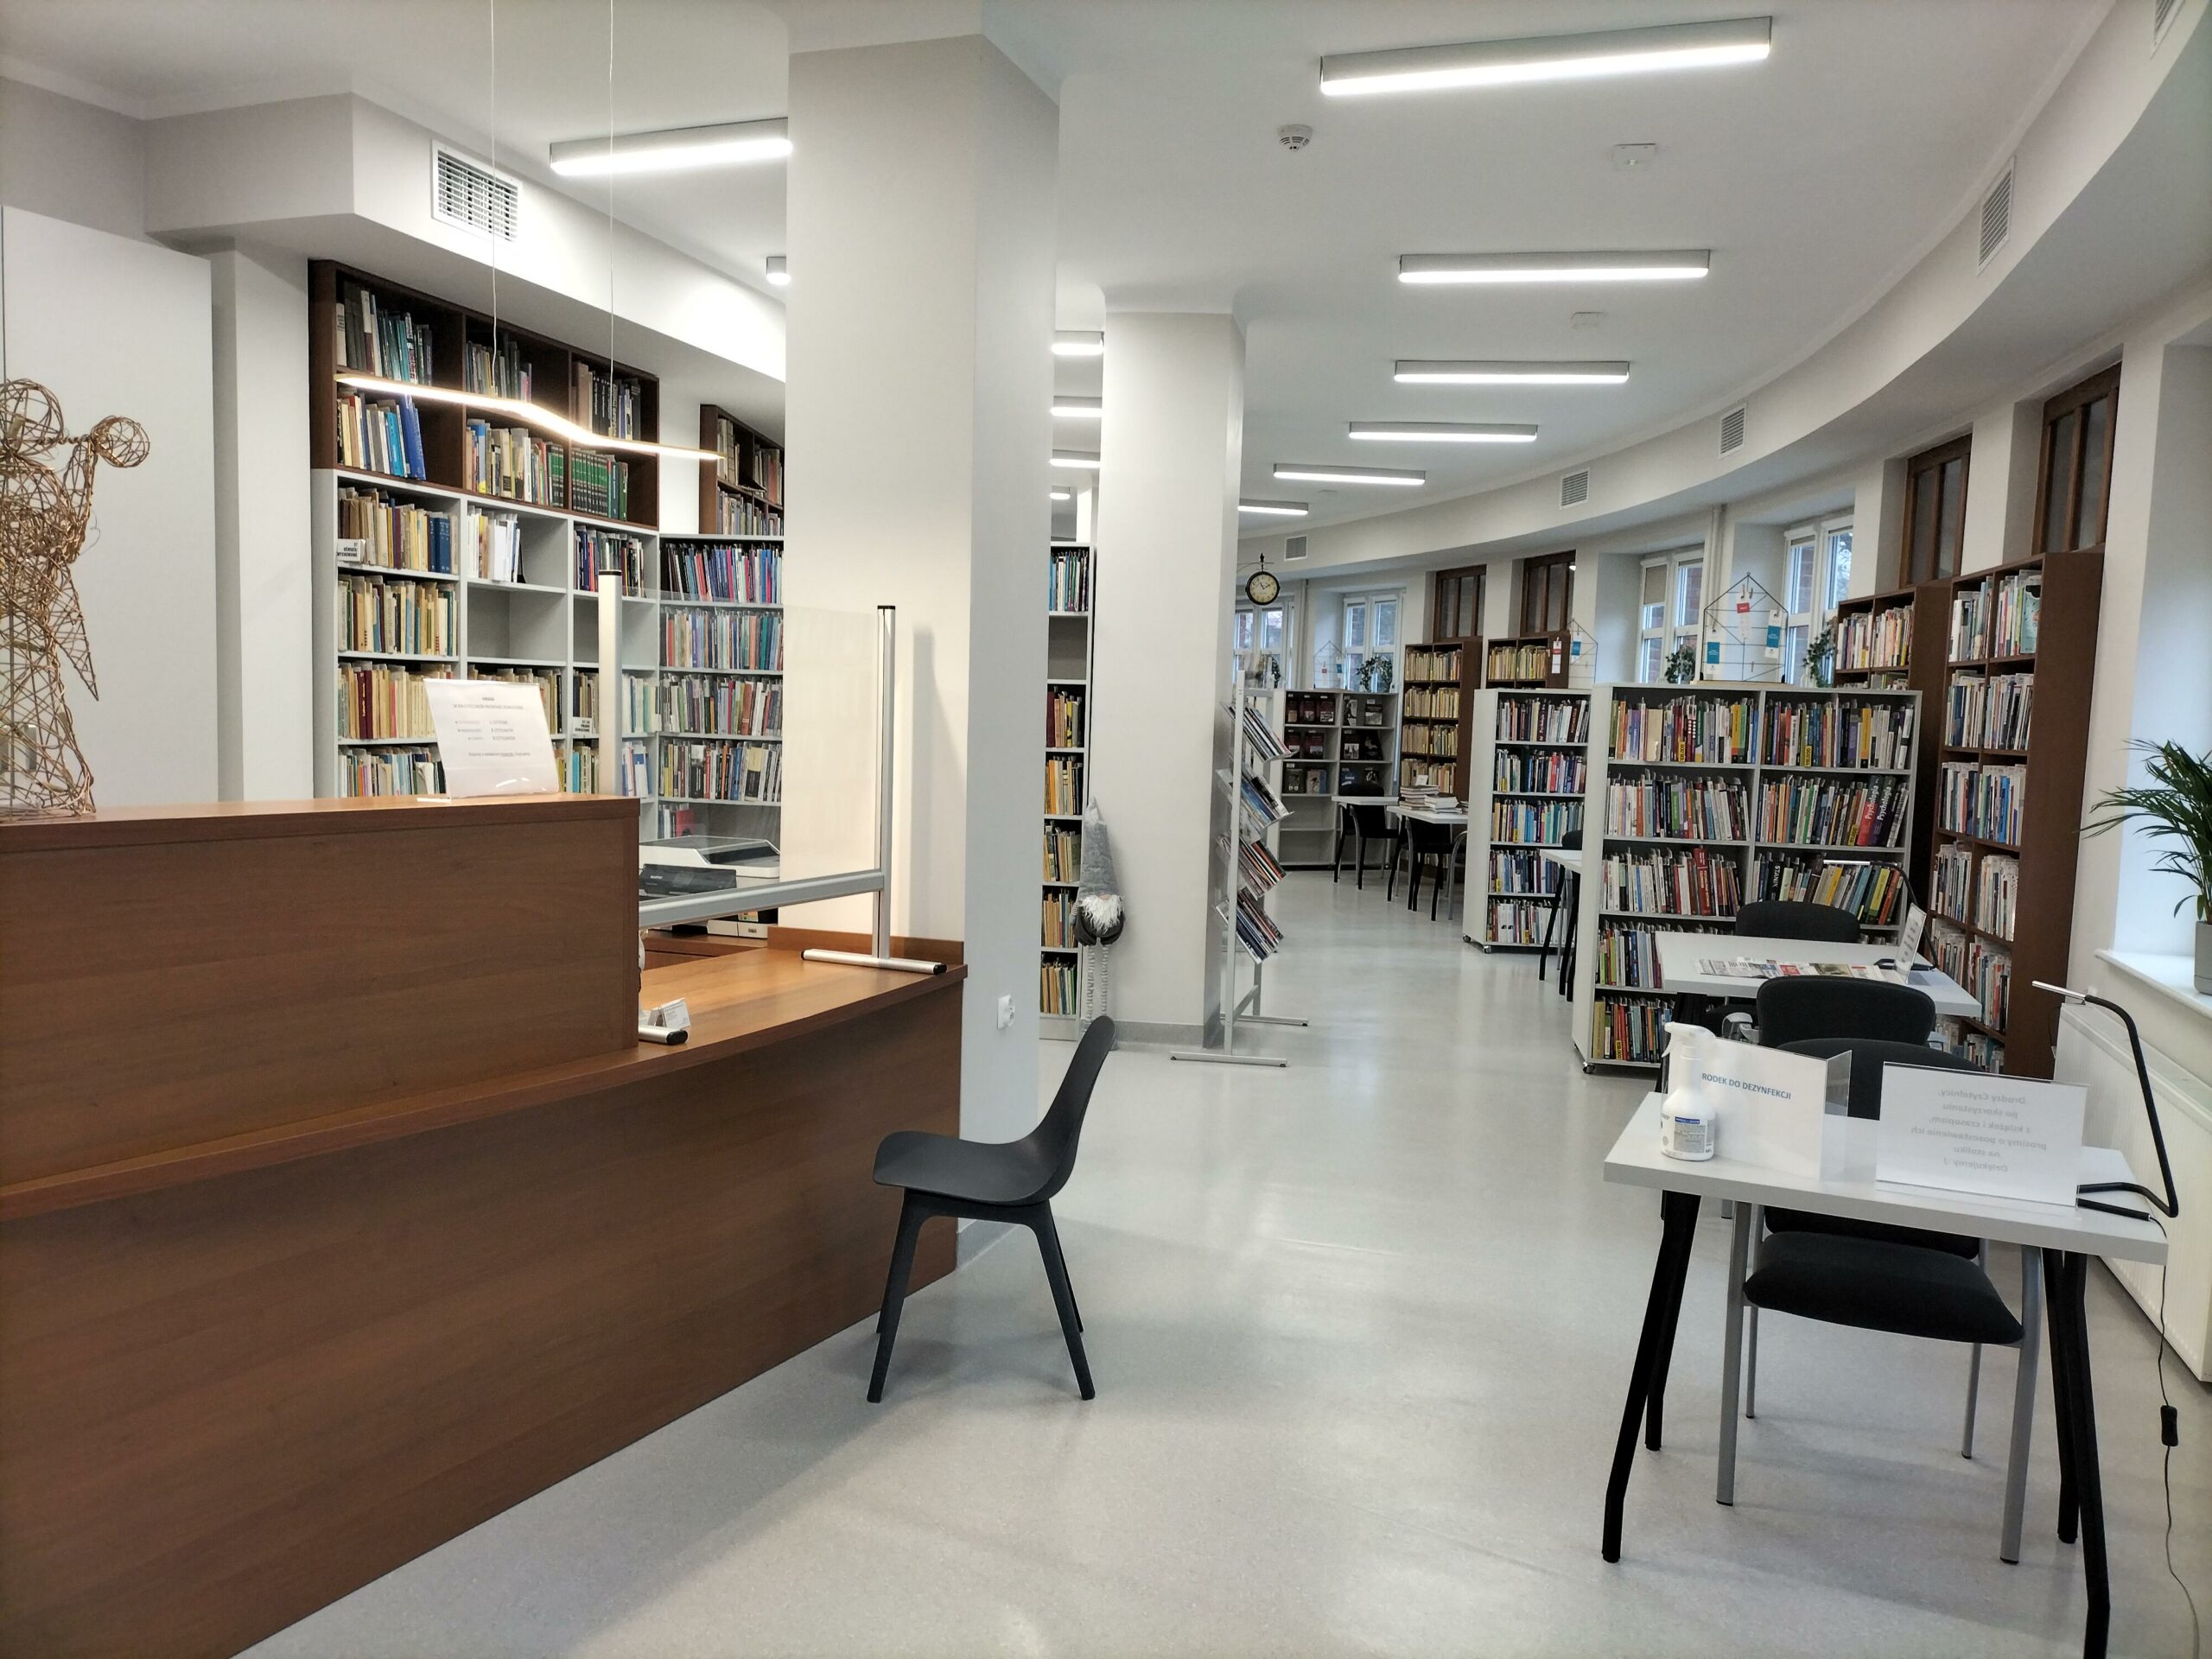 Biblioteka pedagogiczna w Słupsku po nowemu. Zakończenie ważnej inwestycji